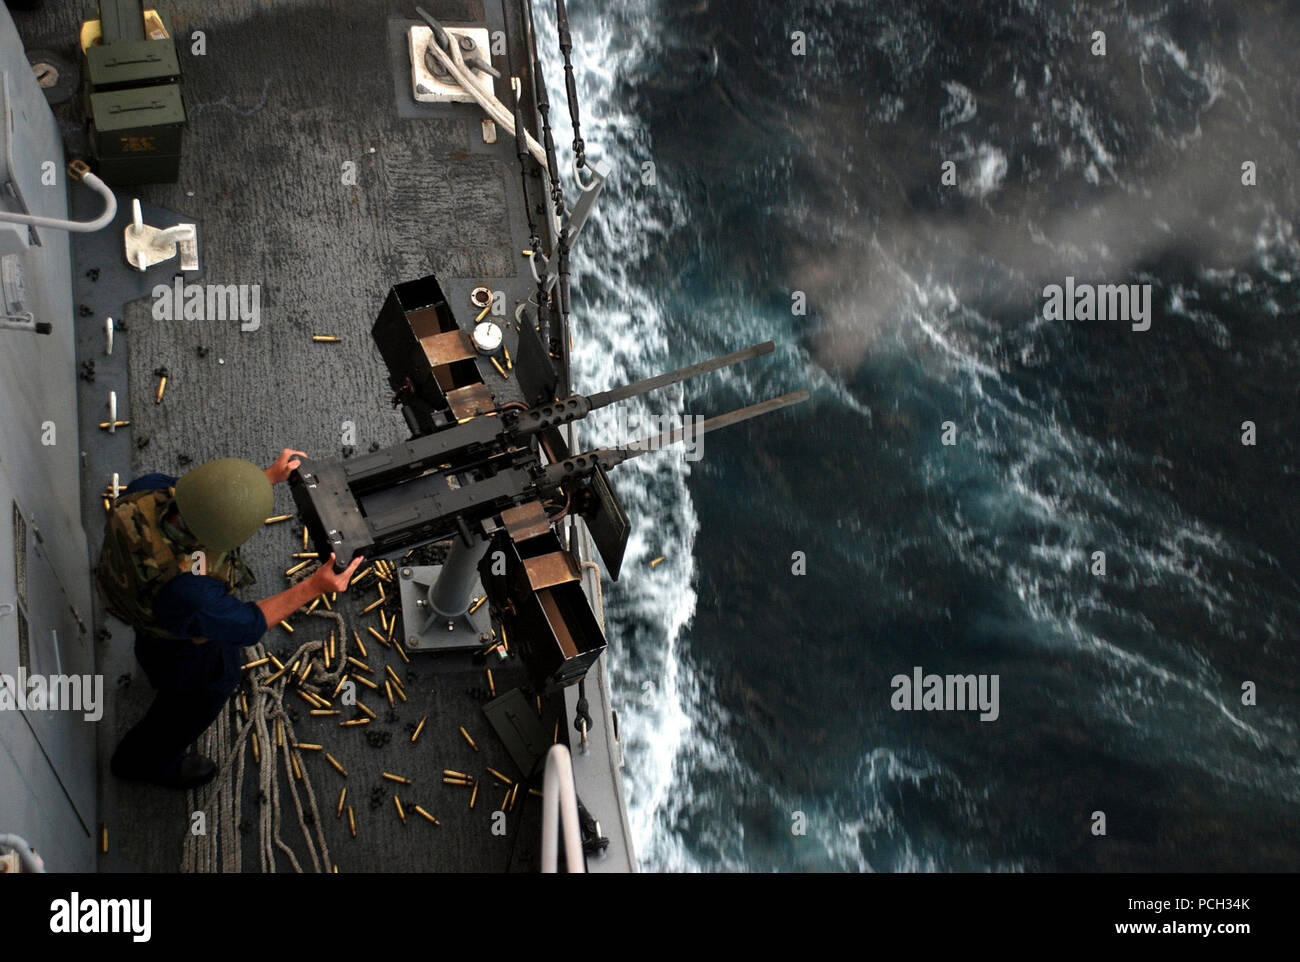 5ª Flota de EE.UU. ÁREA DE RESPONSABILIDAD (Dec. 26, 2012) Técnico Electrónico Seaman Levi Holmes dispara un cañón doble de calibre .50 ametralladora durante un ejercicio de fuego vivo a bordo del buque de transporte anfibio dock USS Green Bay (LPD 20). Green Bay es parte de Peleliu Amphibious Ready Group y embarcó con la 15ª Unidad Expedicionaria de los Infantes de Marina (15 MEU) está desplegada en apoyo de operaciones de seguridad marítima y los esfuerzos de cooperación de seguridad de teatro en los EE.UU. 5ª Flota área de responsabilidad. Foto de stock